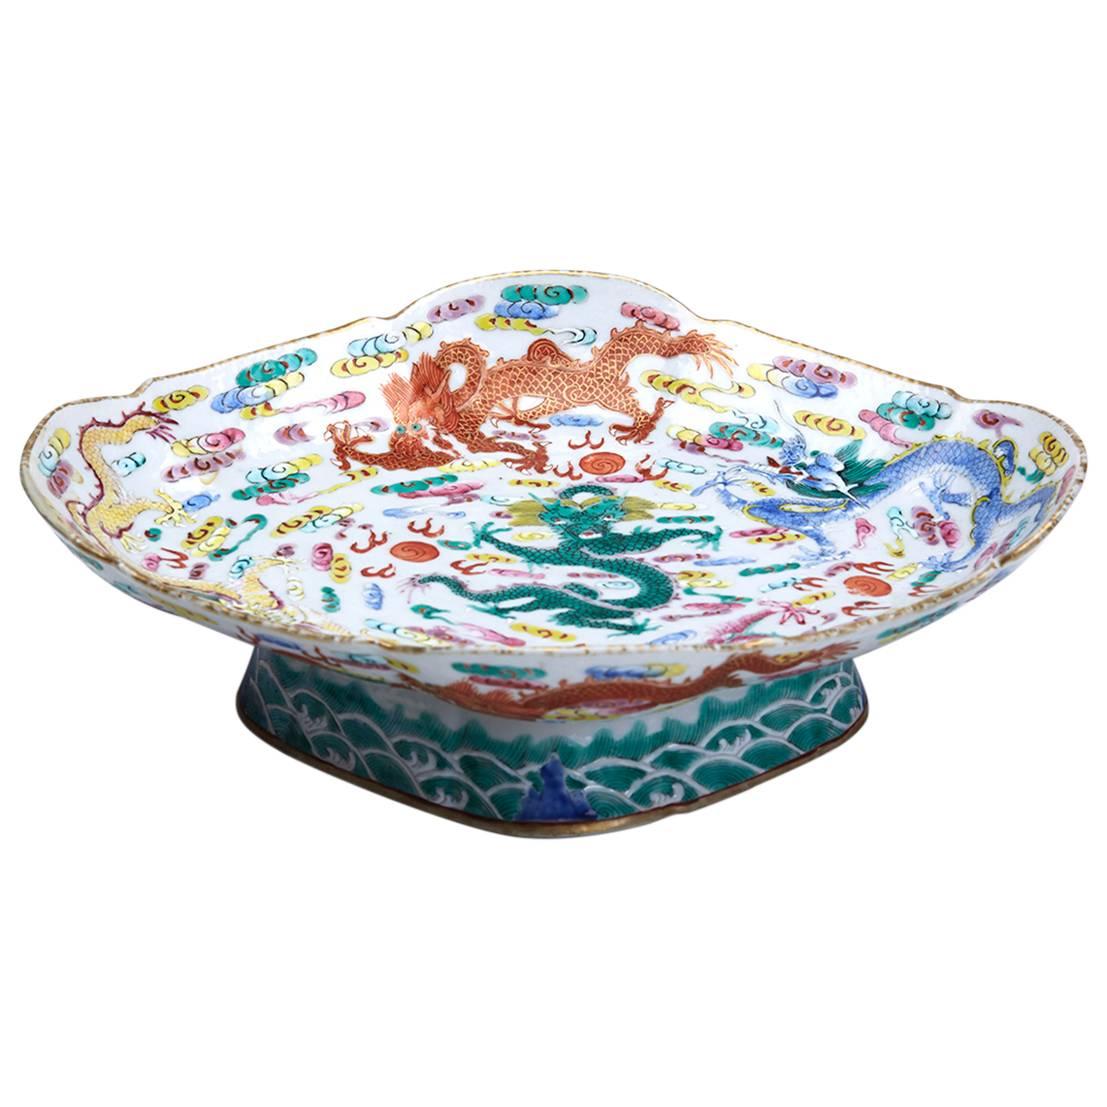 Antique Chinese Daoguang Dragon Pedestal Bowl, 1821-1850